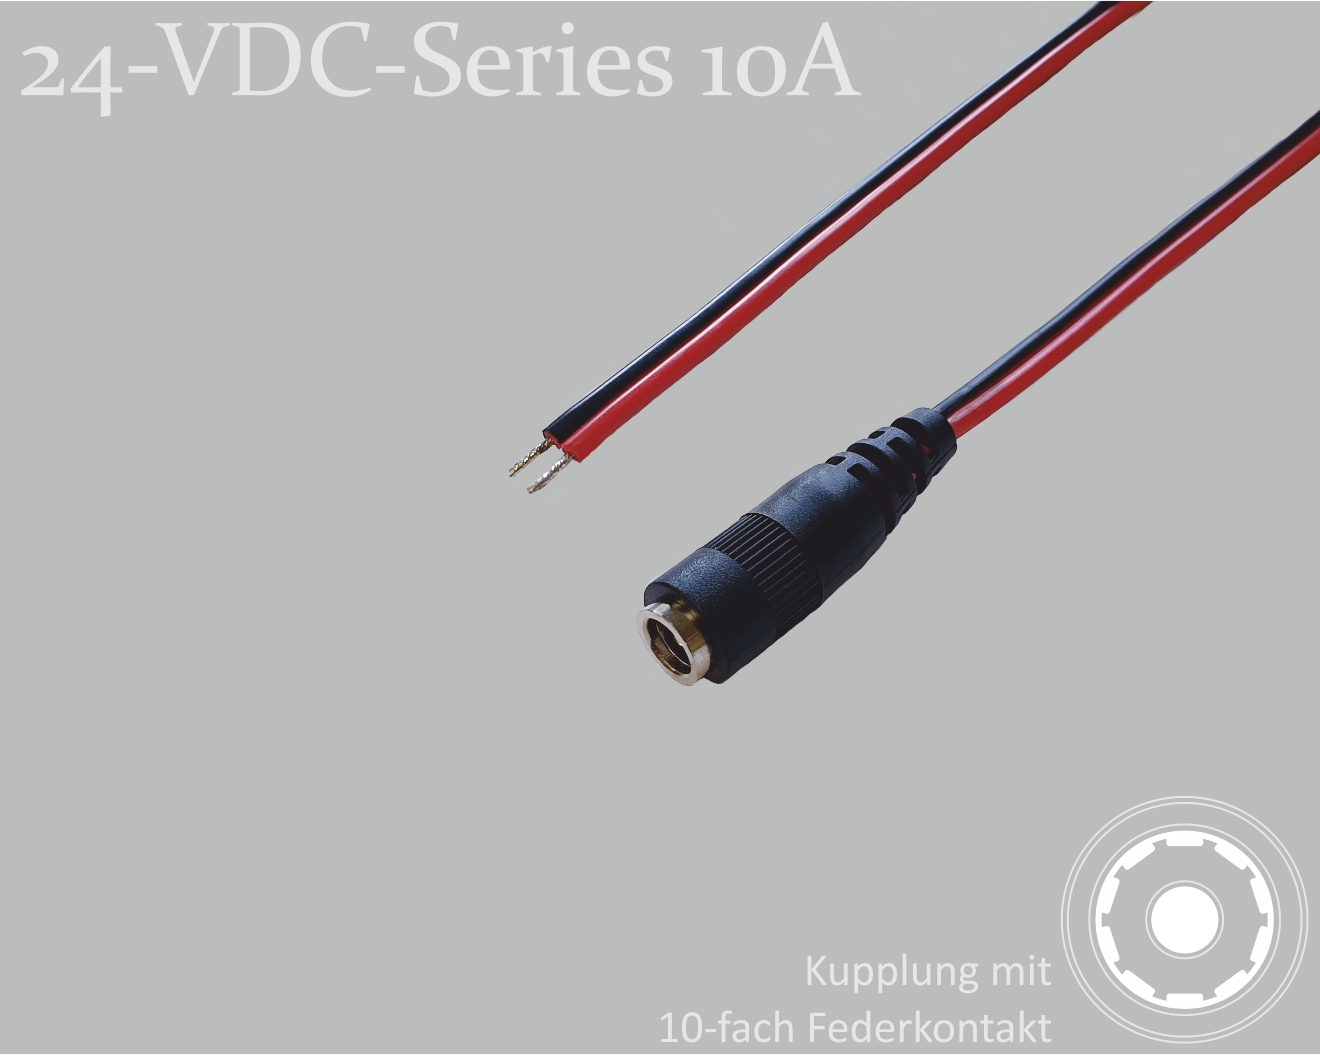 24-VDC-Series 10A, DC-Anschlusskabel, DC-Kupplung mit 10-Federkontakt 2,5x5,5mm, Flachkabel 2x0,75mm², rot/schwarz, verzinnte Enden, 0,75m